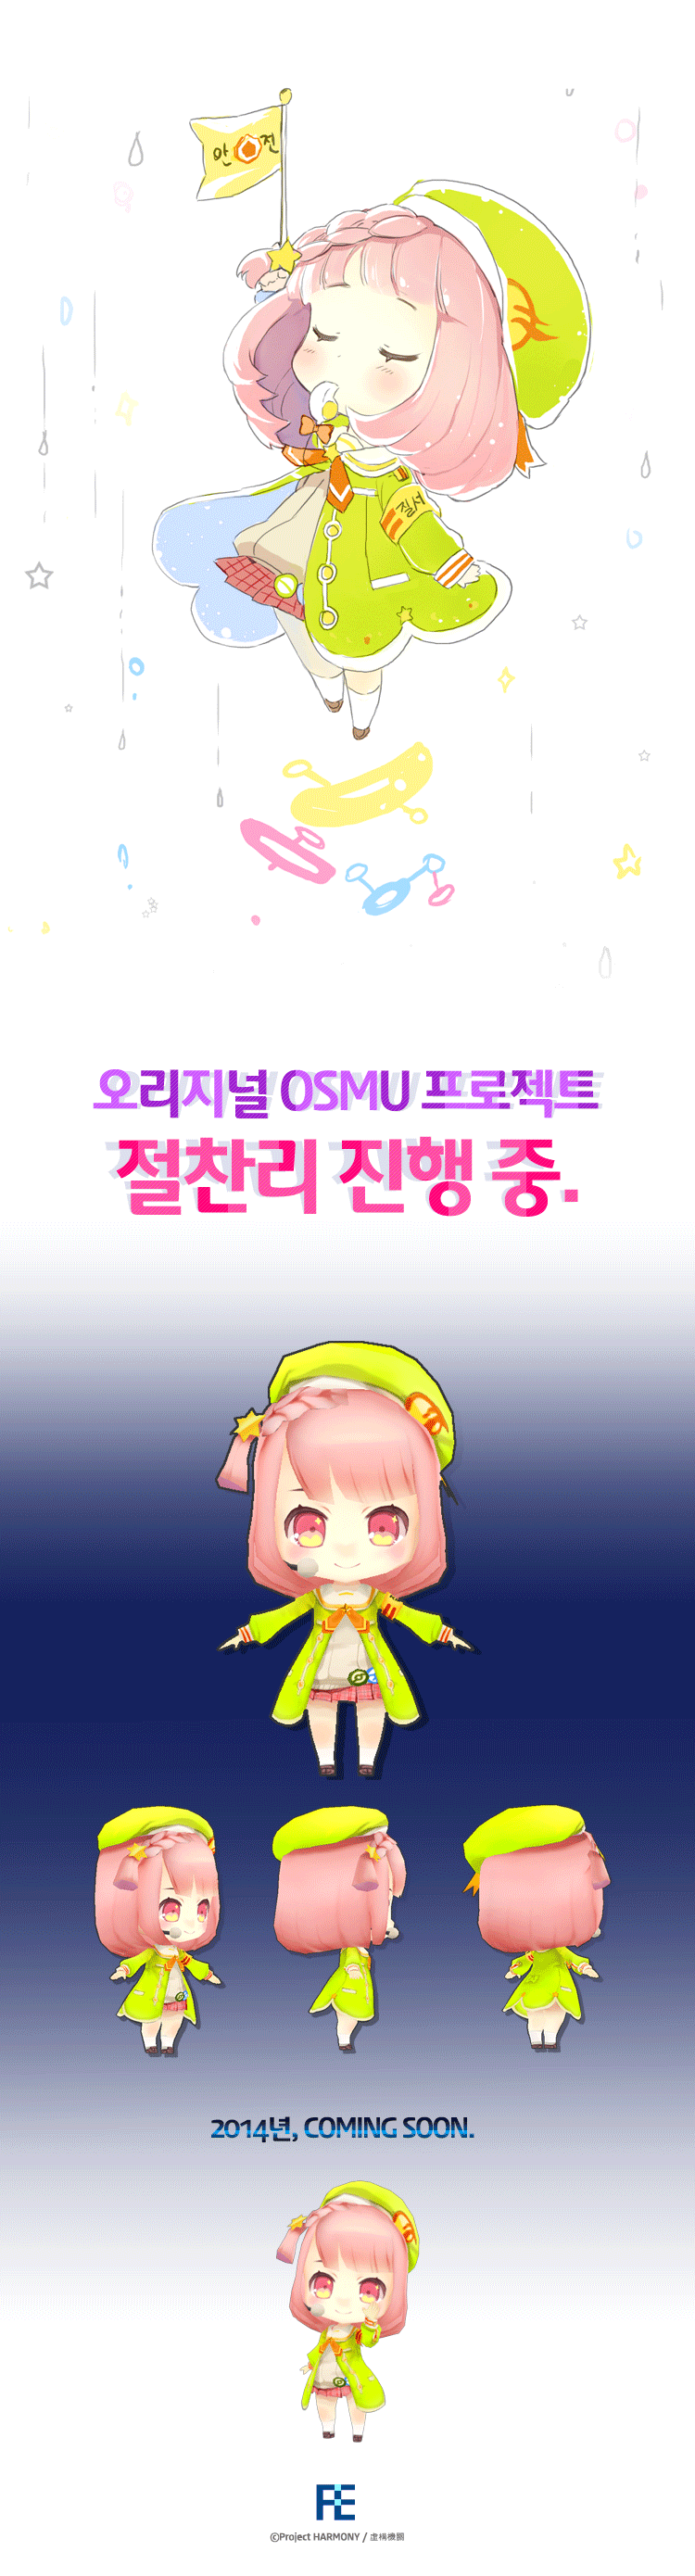 오리지널-OSMU-프로젝트_광고1.gif